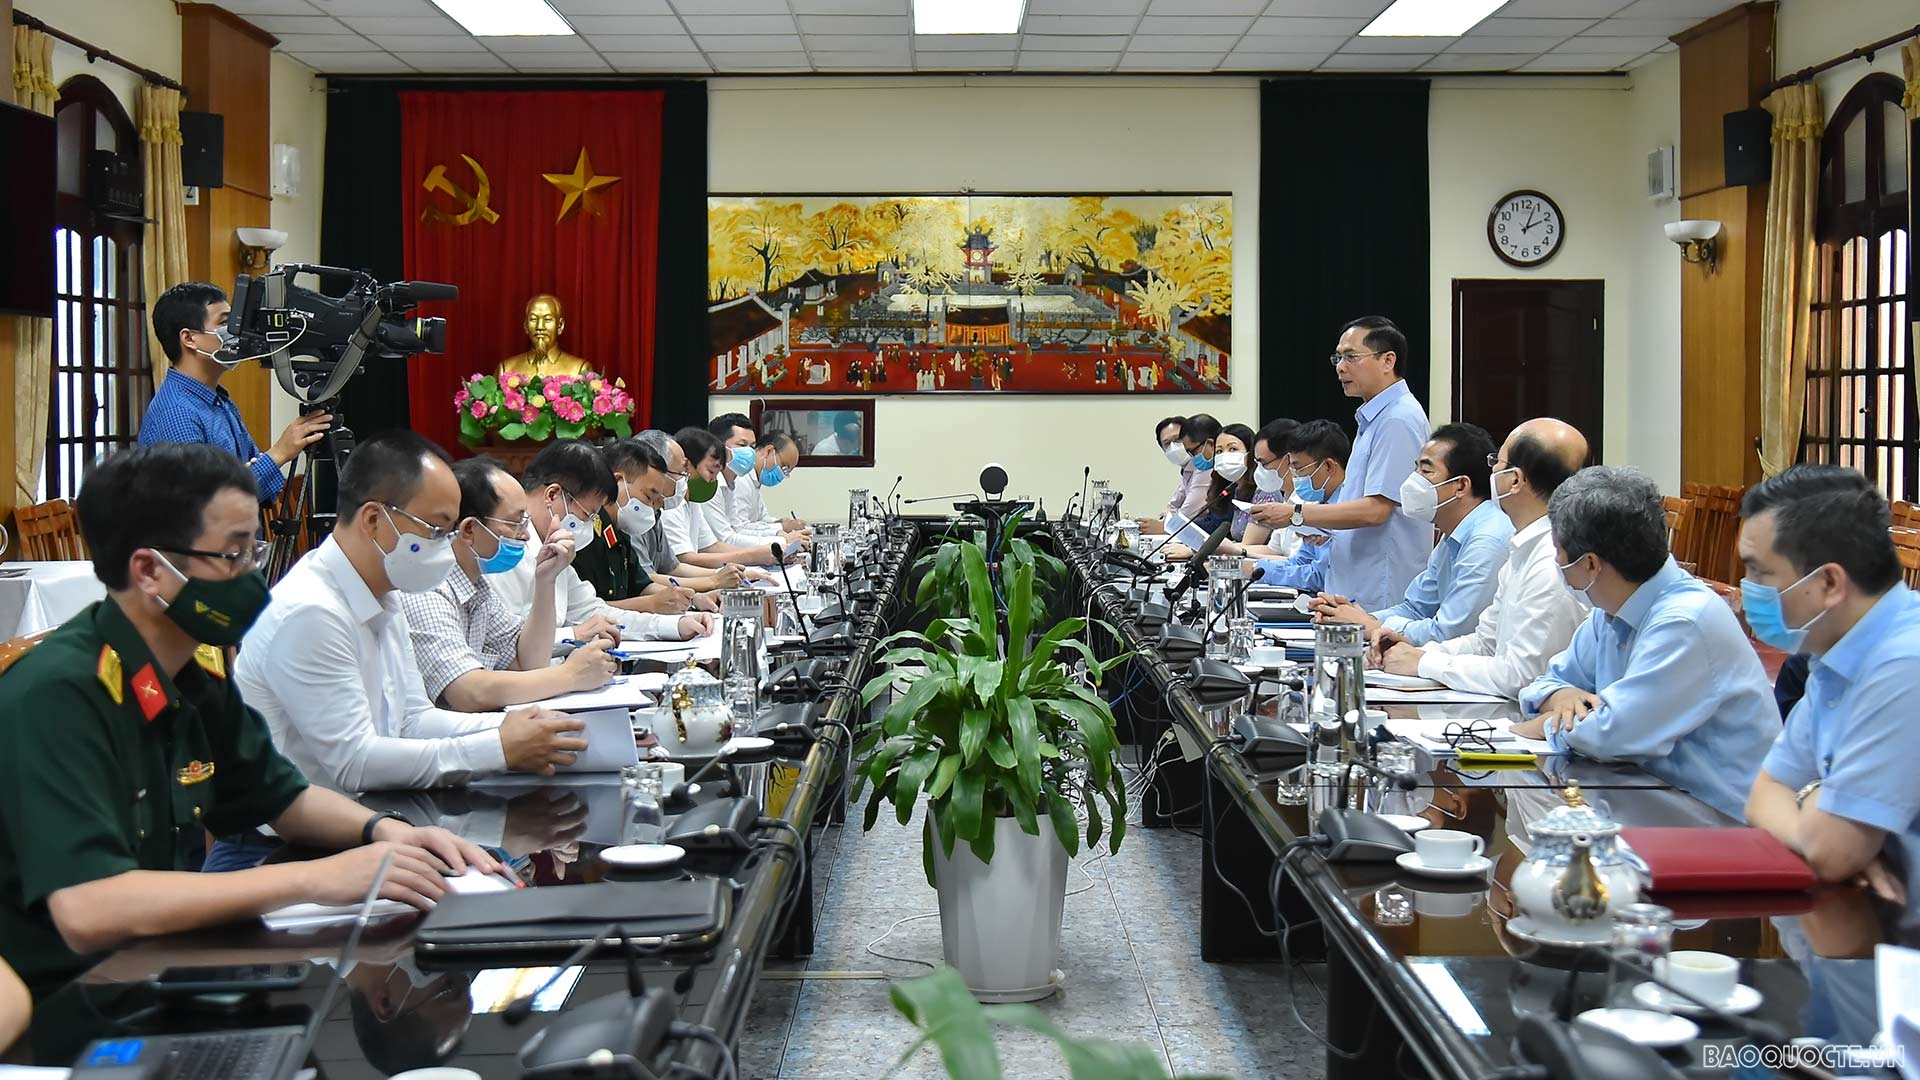 Bộ trưởng Bùi Thanh Sơn: tình hình cấp bách hiện nay, phương châm của ngoại giao vaccine là chủ động tiến công. (Ảnh: Tuấn Anh)